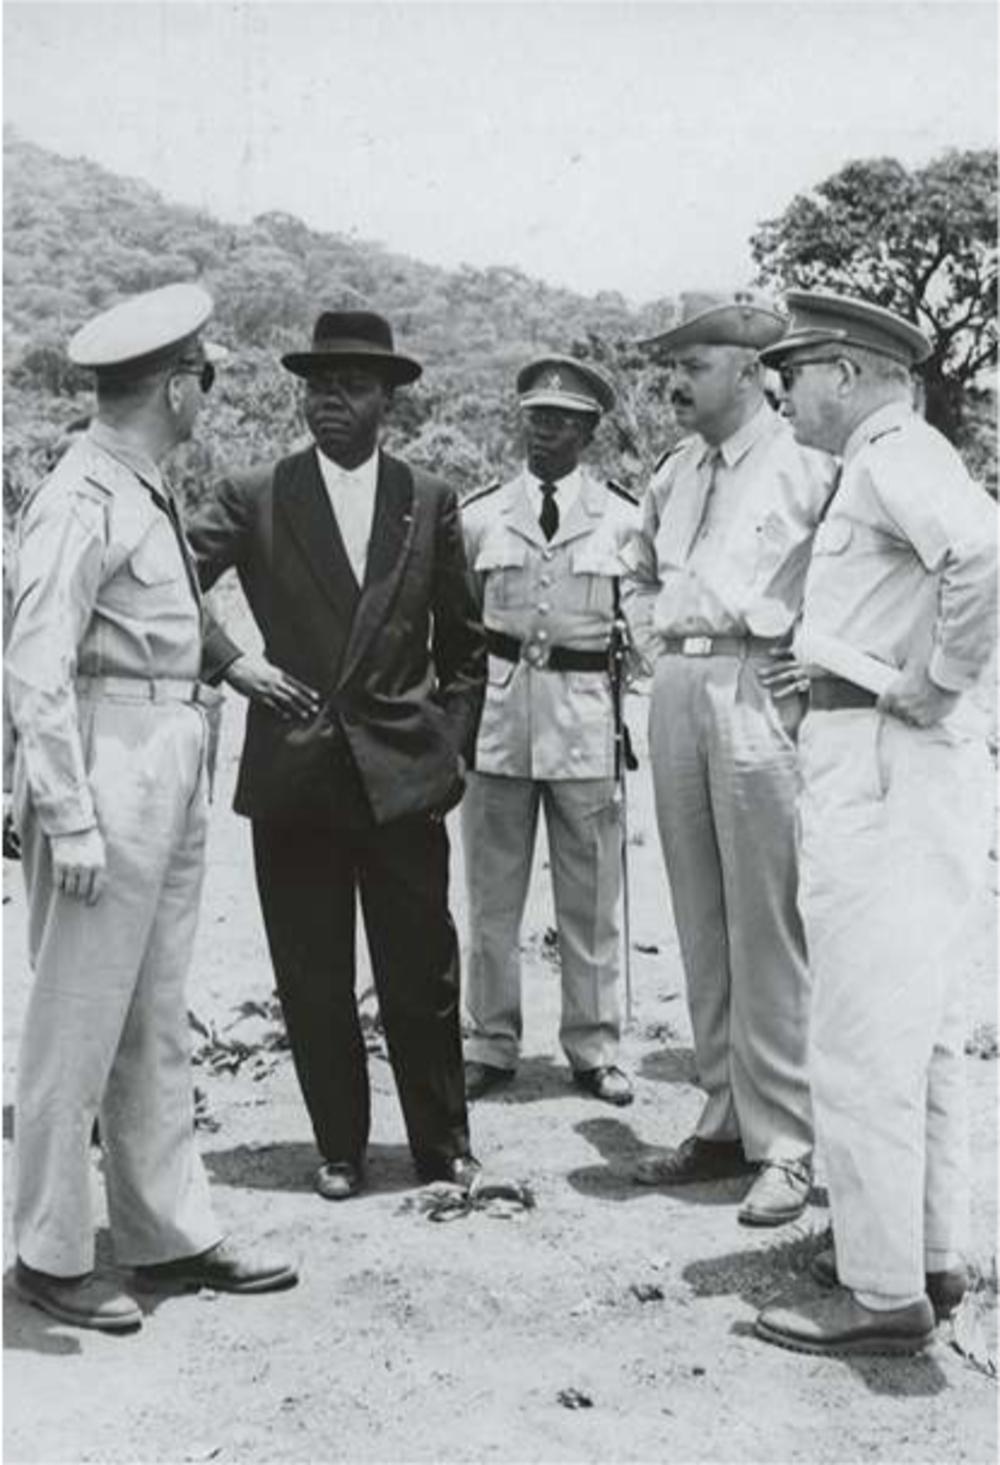 De man in het zwarte pak is Moïse Tshombe, leider van CONAKAT.